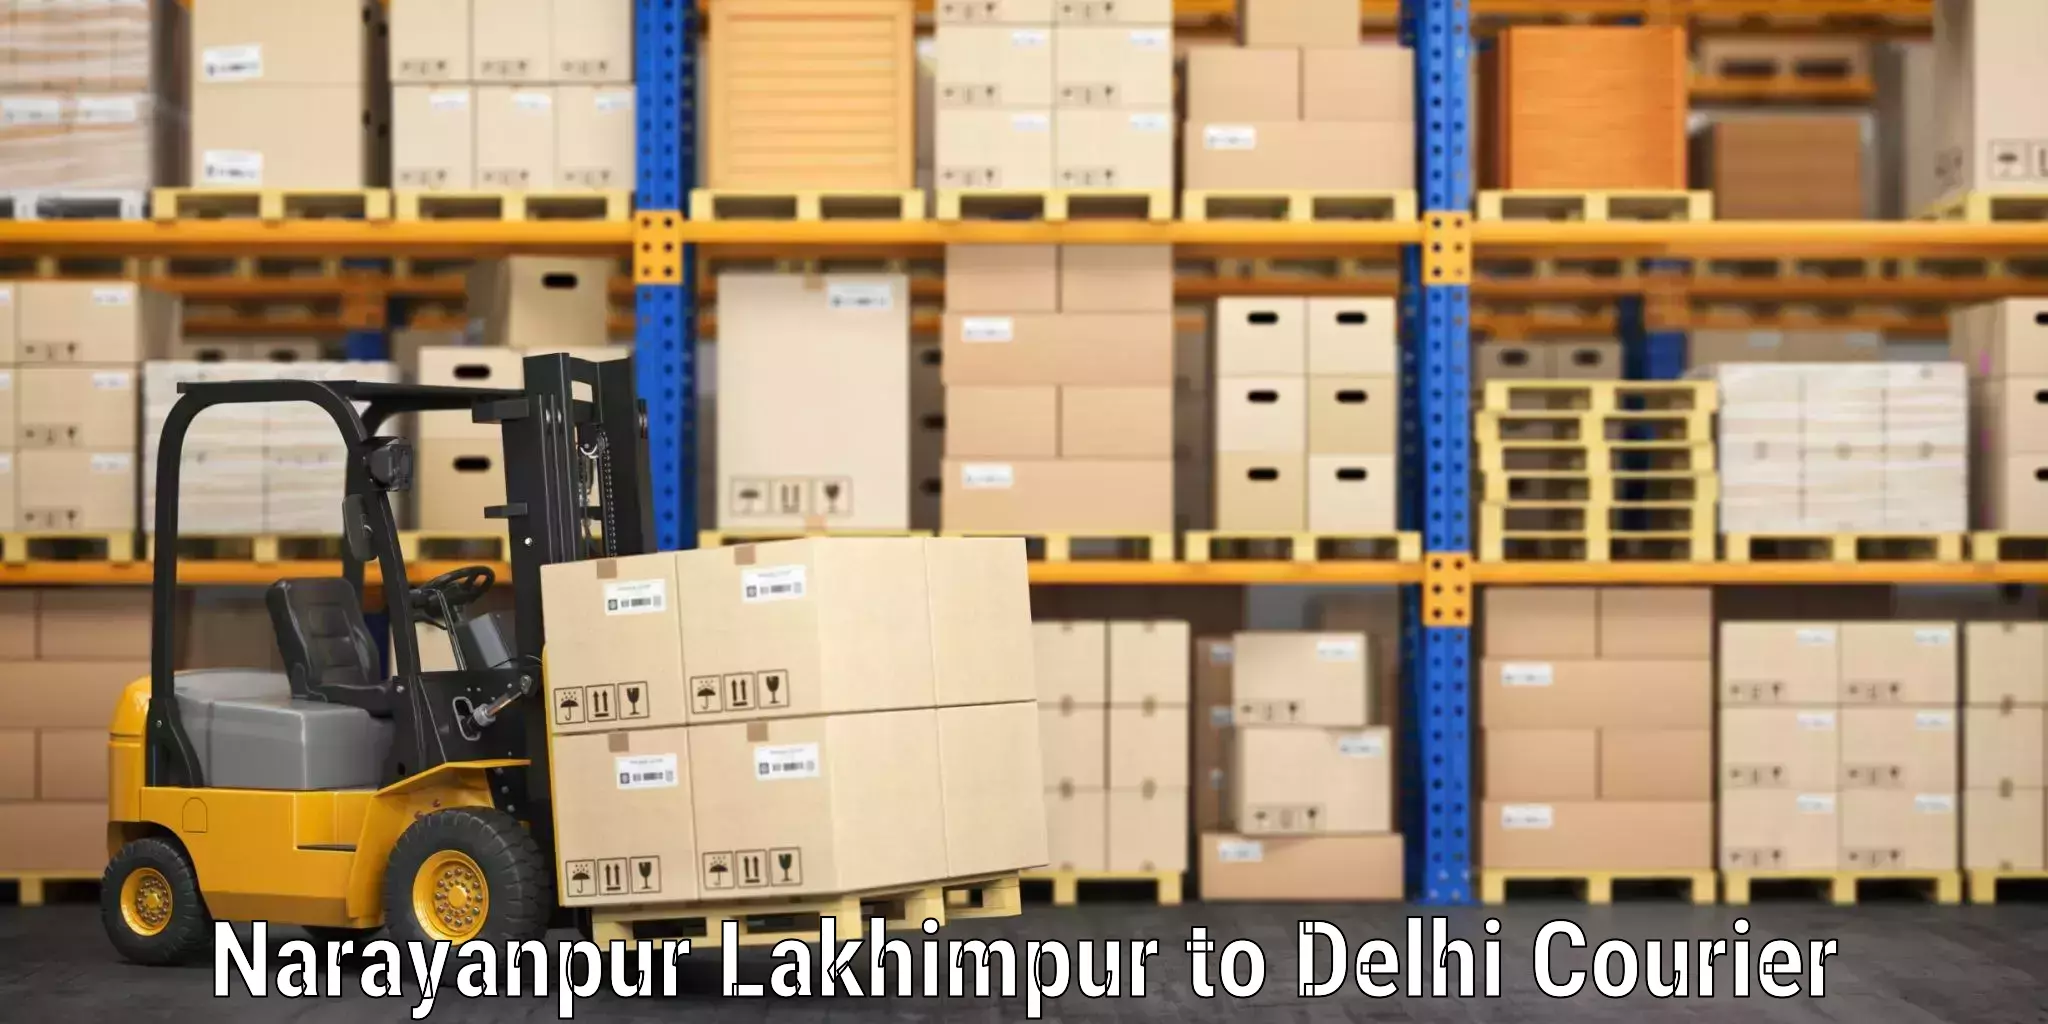 Professional baggage transport Narayanpur Lakhimpur to NCR